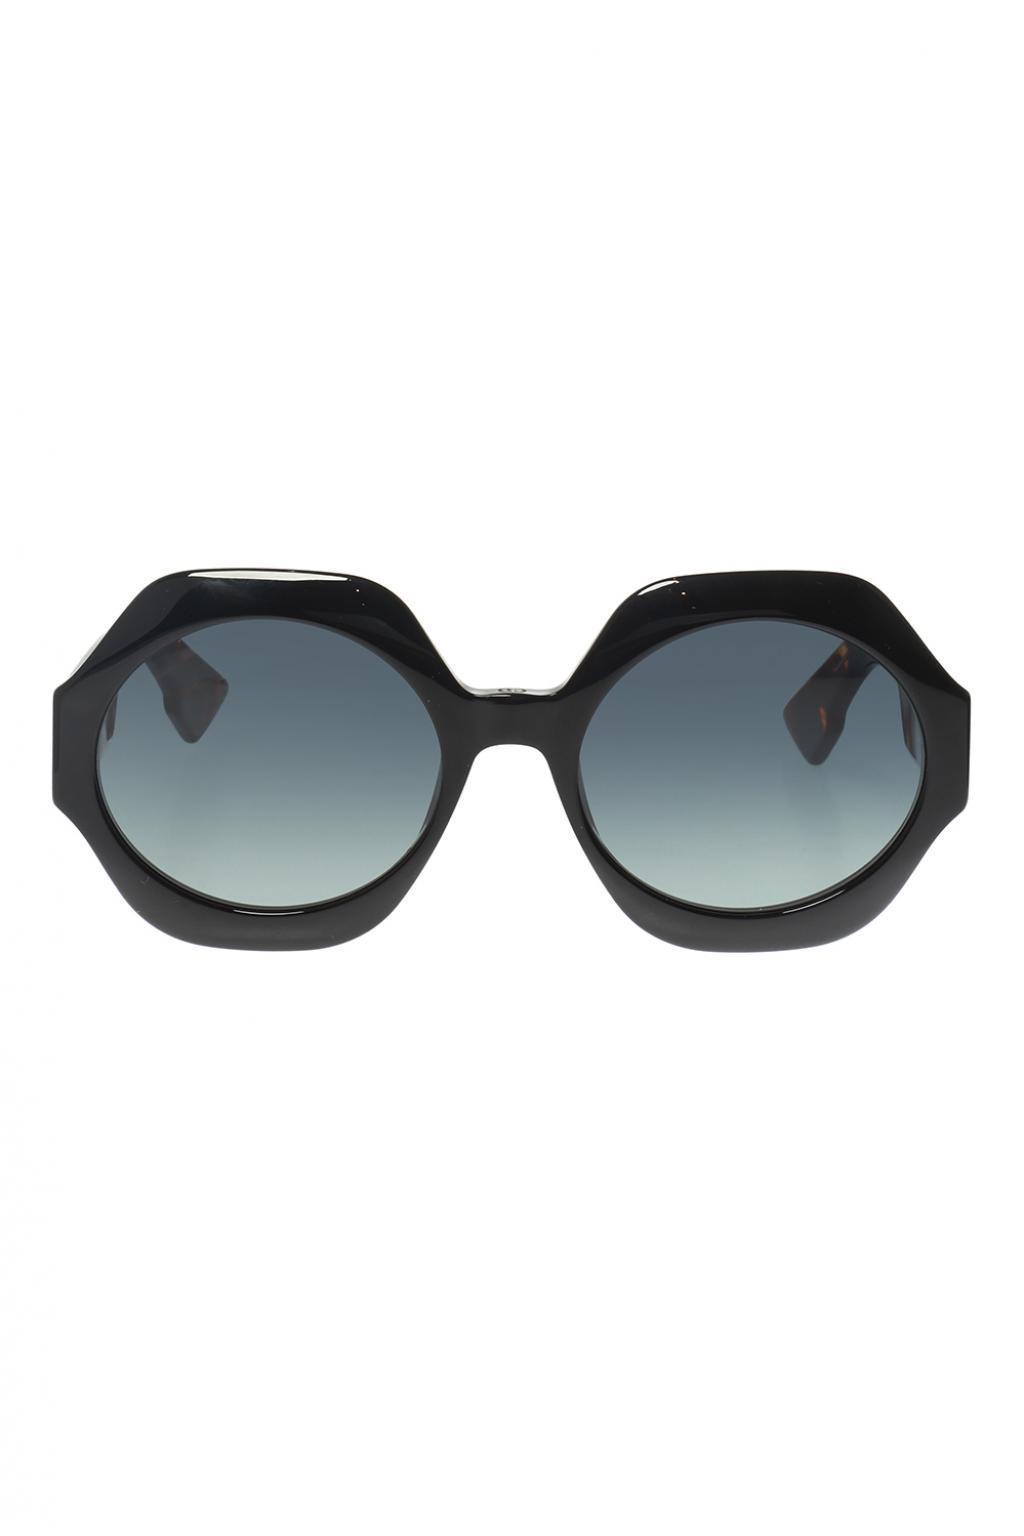 Dior 'spirit 1' Sunglasses - Lyst